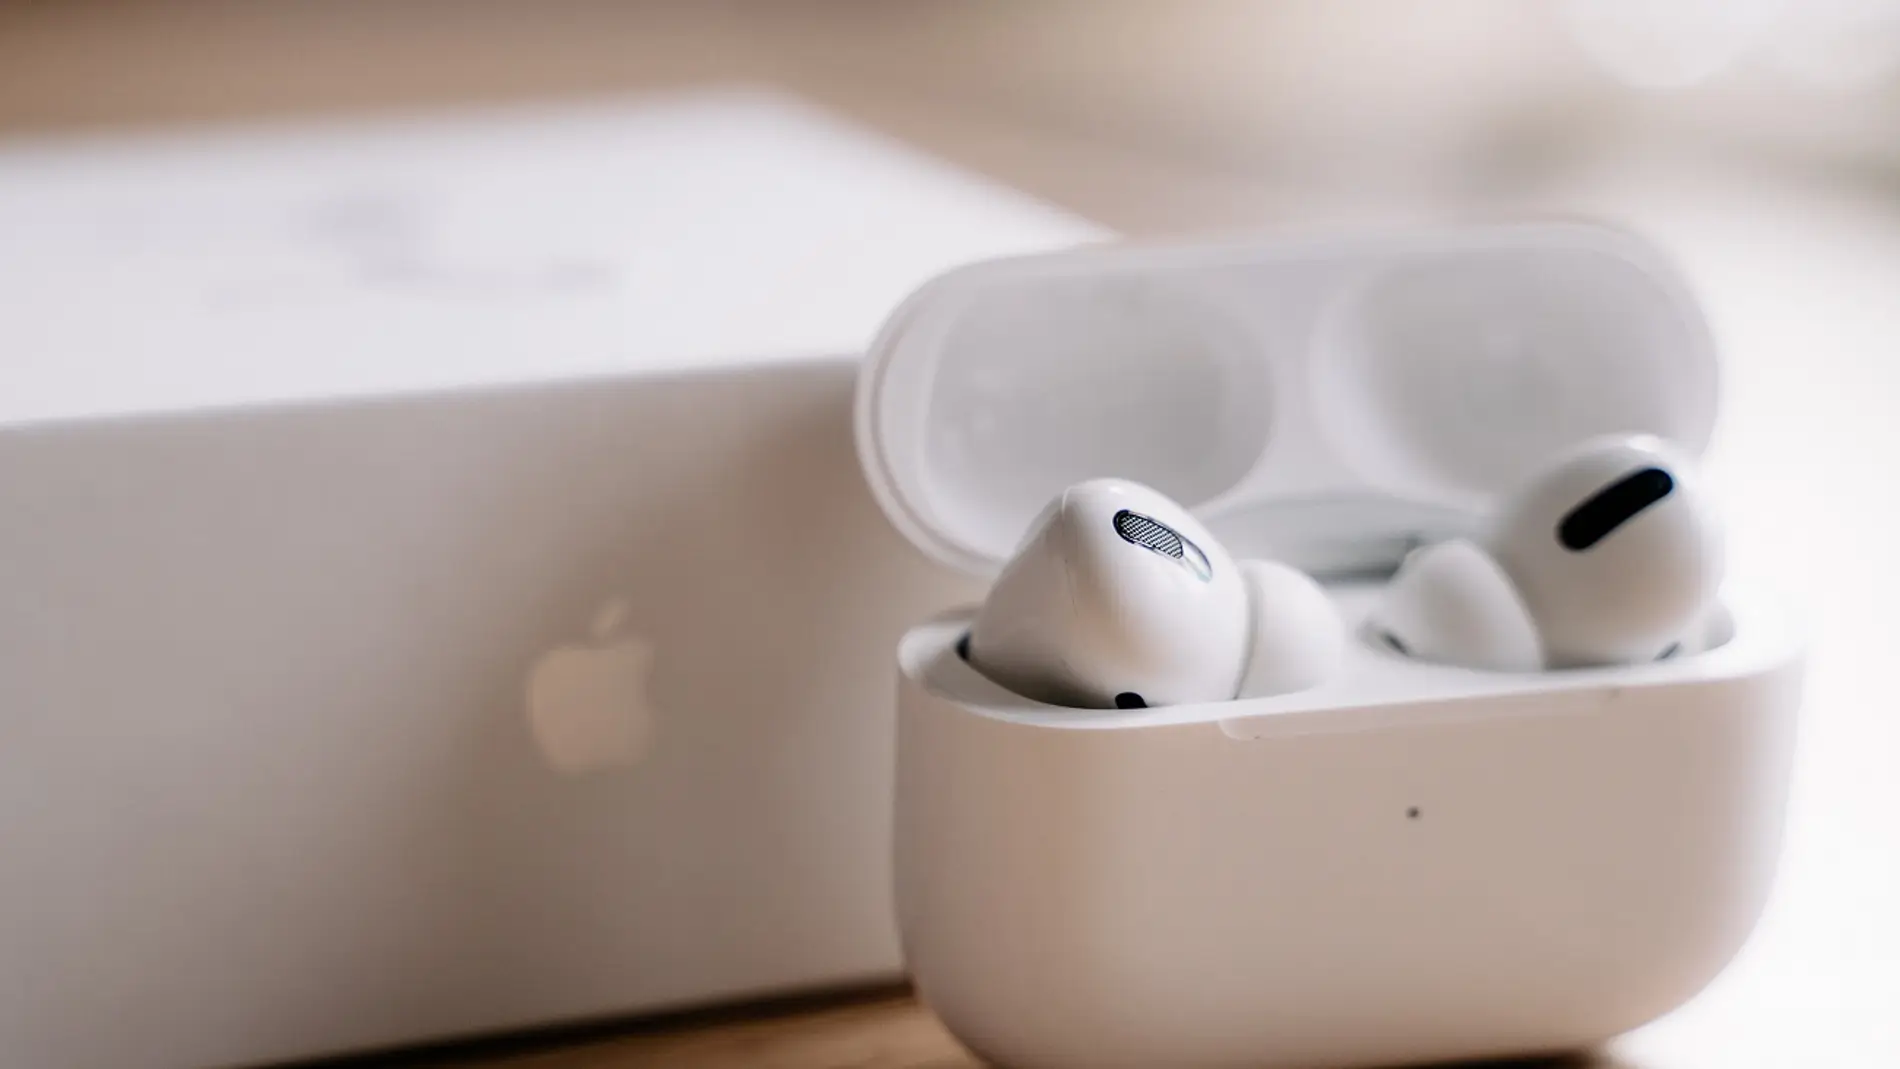 Los AirPods más baratos vuelven a estar en tuimeilibre: llévate los  auriculares true wireless de Apple por 129 euros ahorrando 50